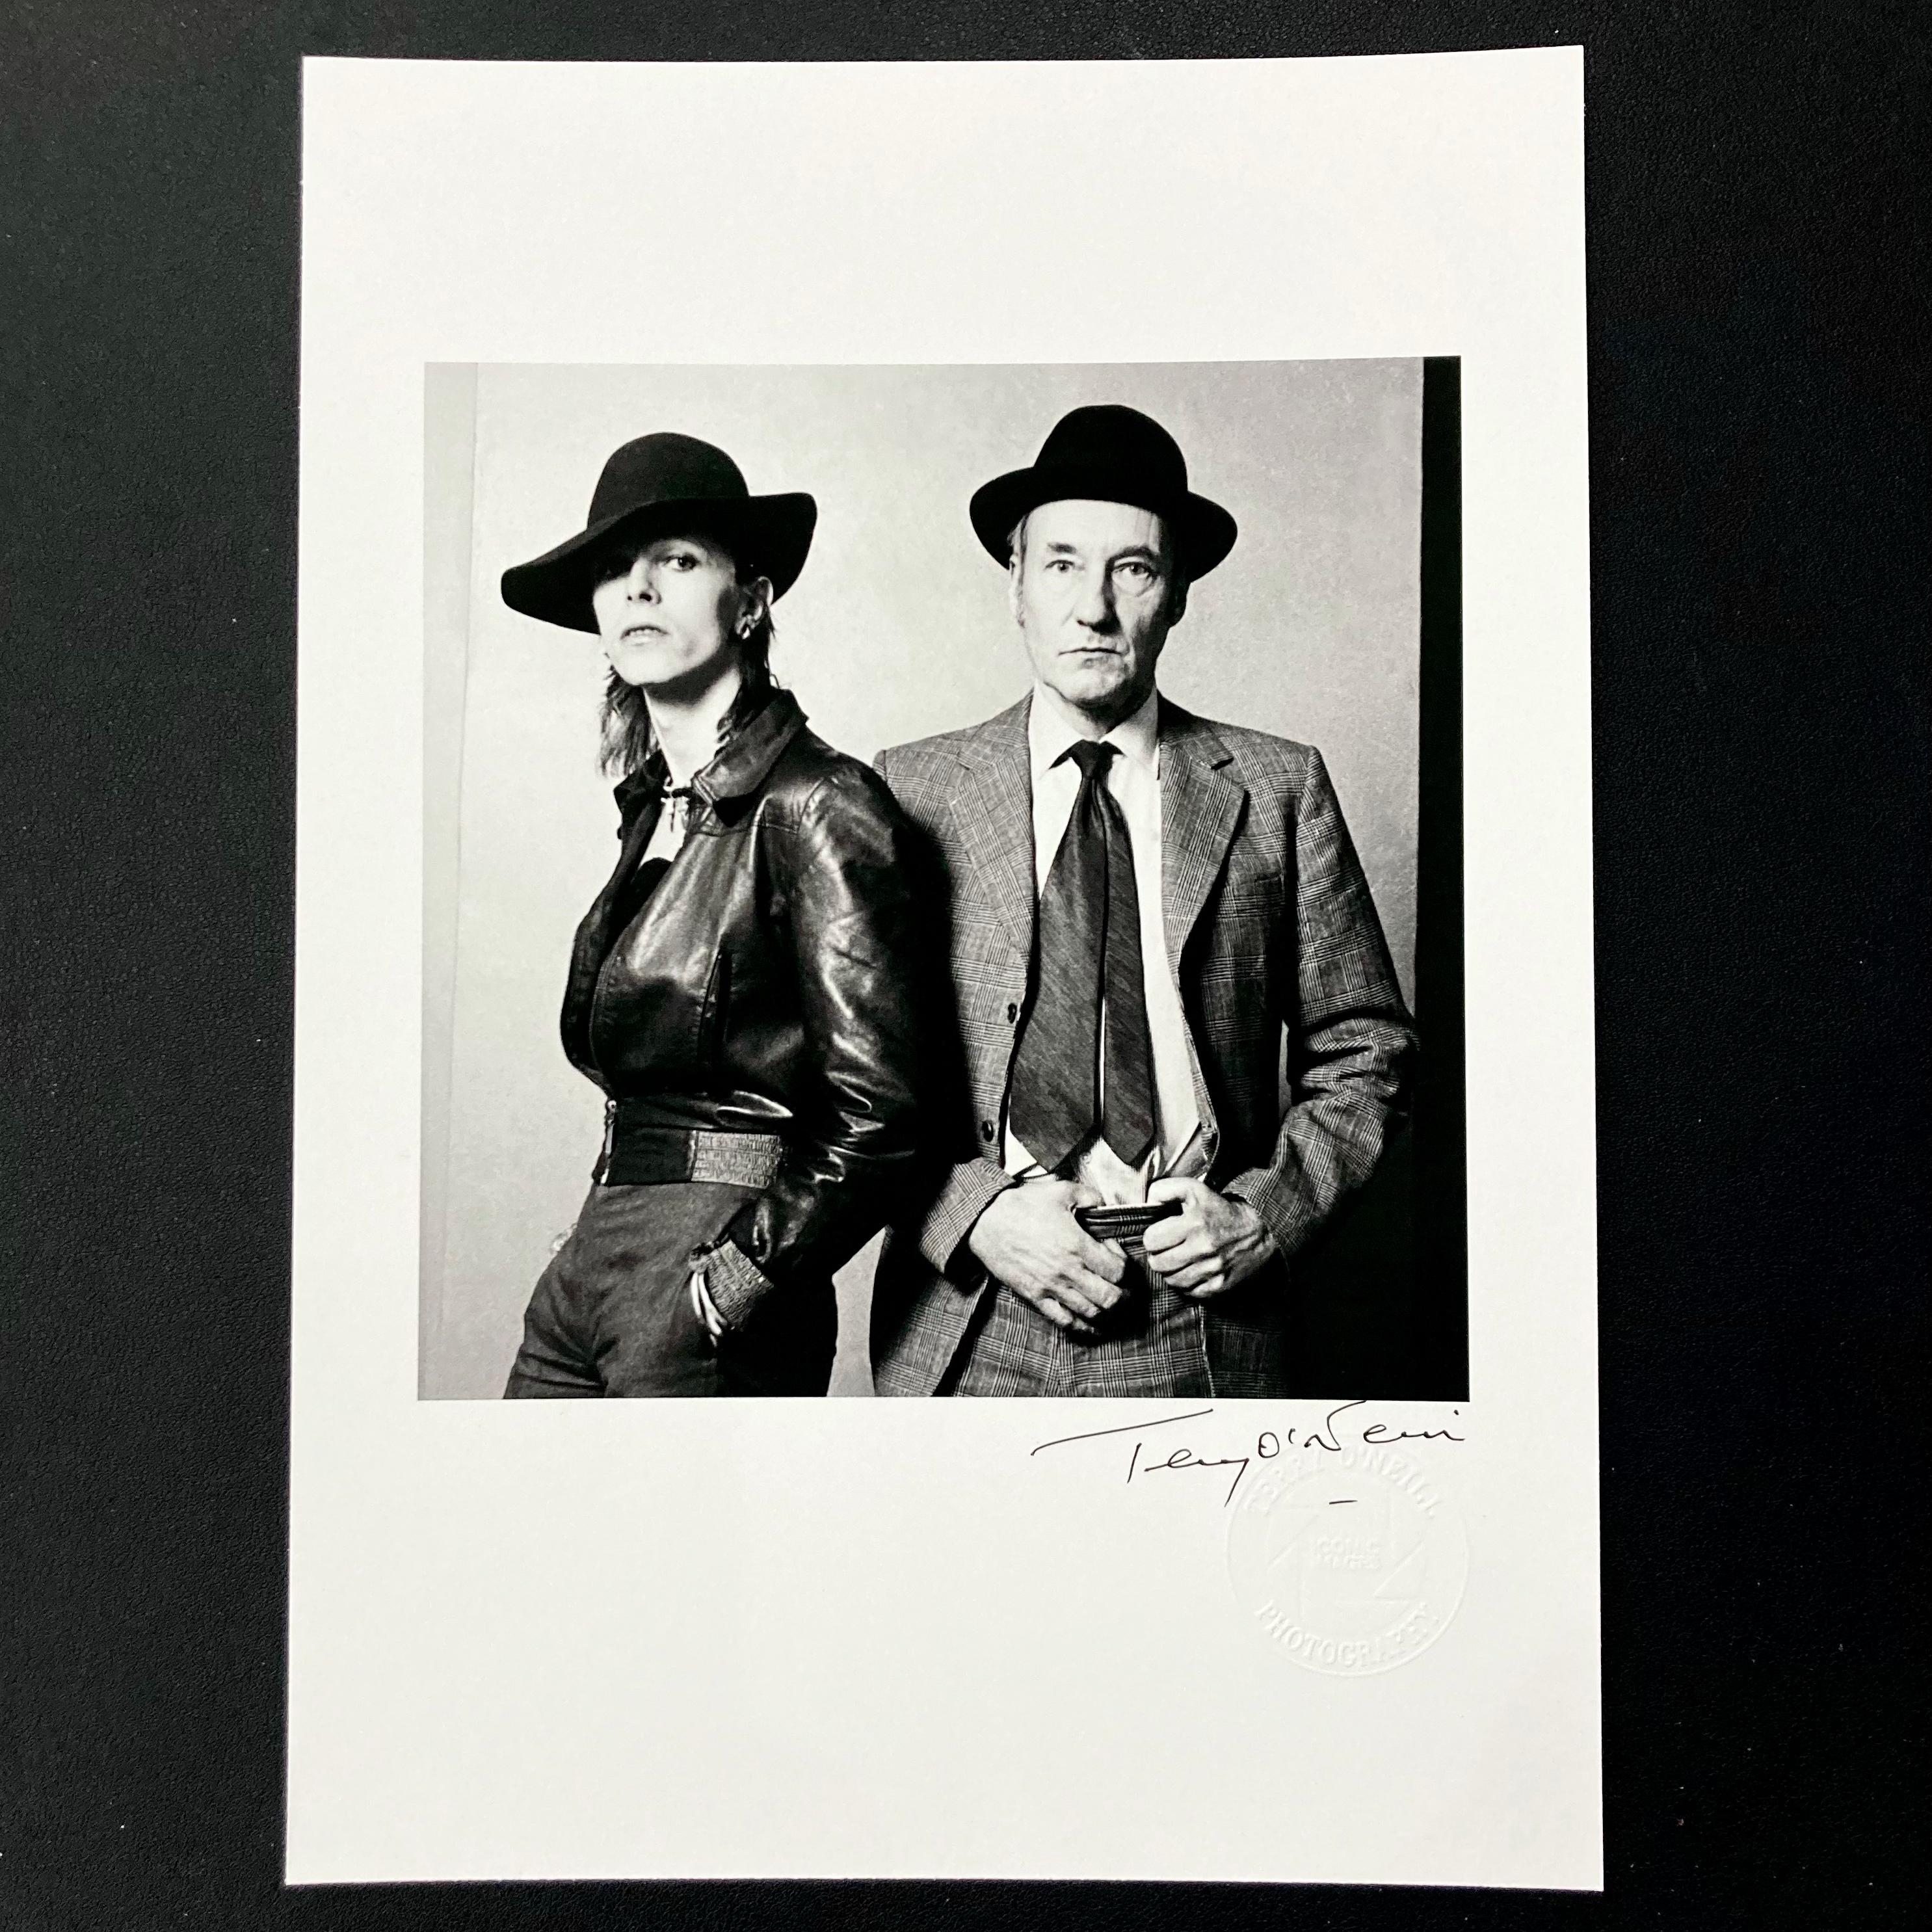 Signierter, 8" x 10" großer Archivdruck von David Bowie und William Burroughs in offener Auflage von Terry O'Neill, mit dem geprägten Studio-Stempel von Terry O'Neill

Am 28. Februar 1974 veröffentlichte die Zeitschrift Rolling Stone ein